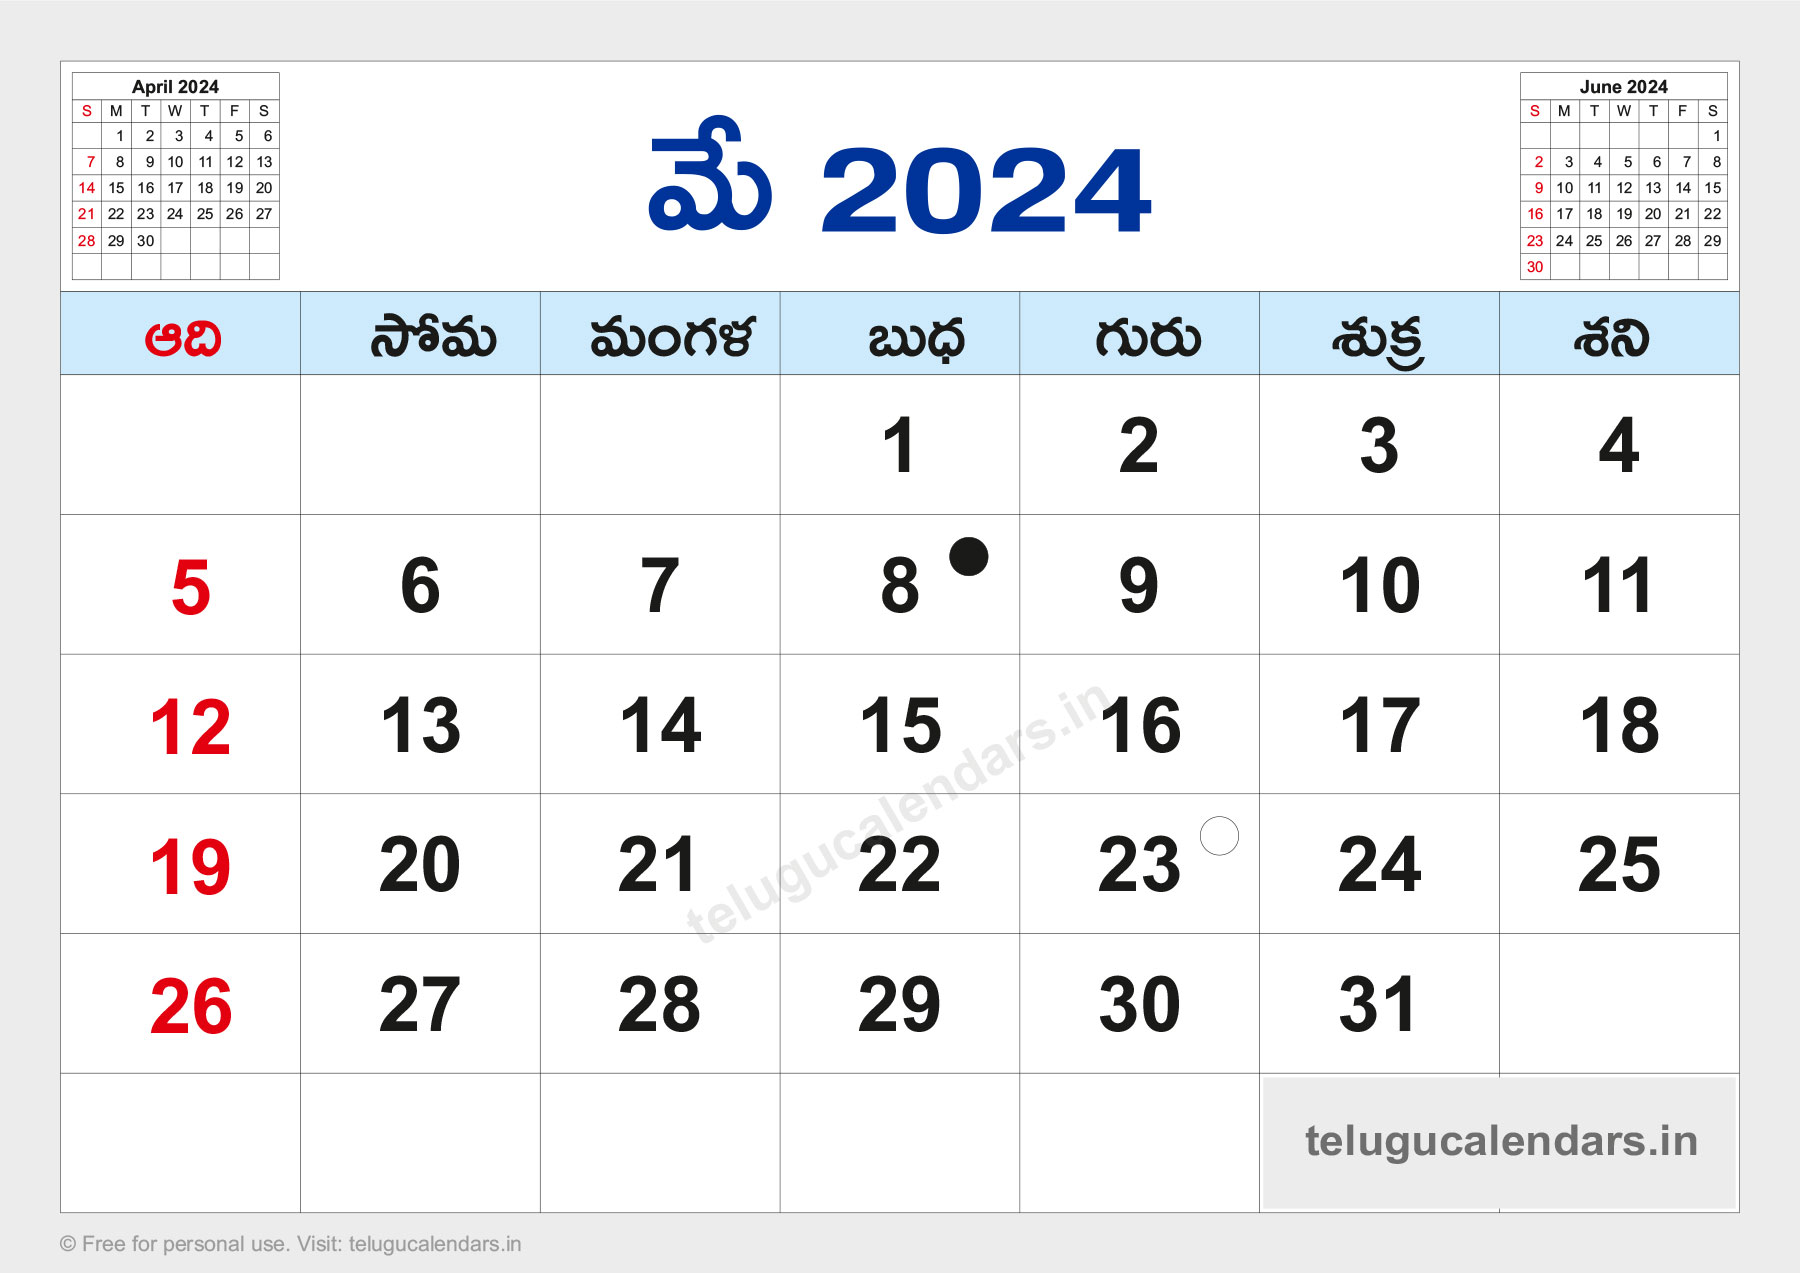 2024 May Telugu Calendar Dale Jacquette